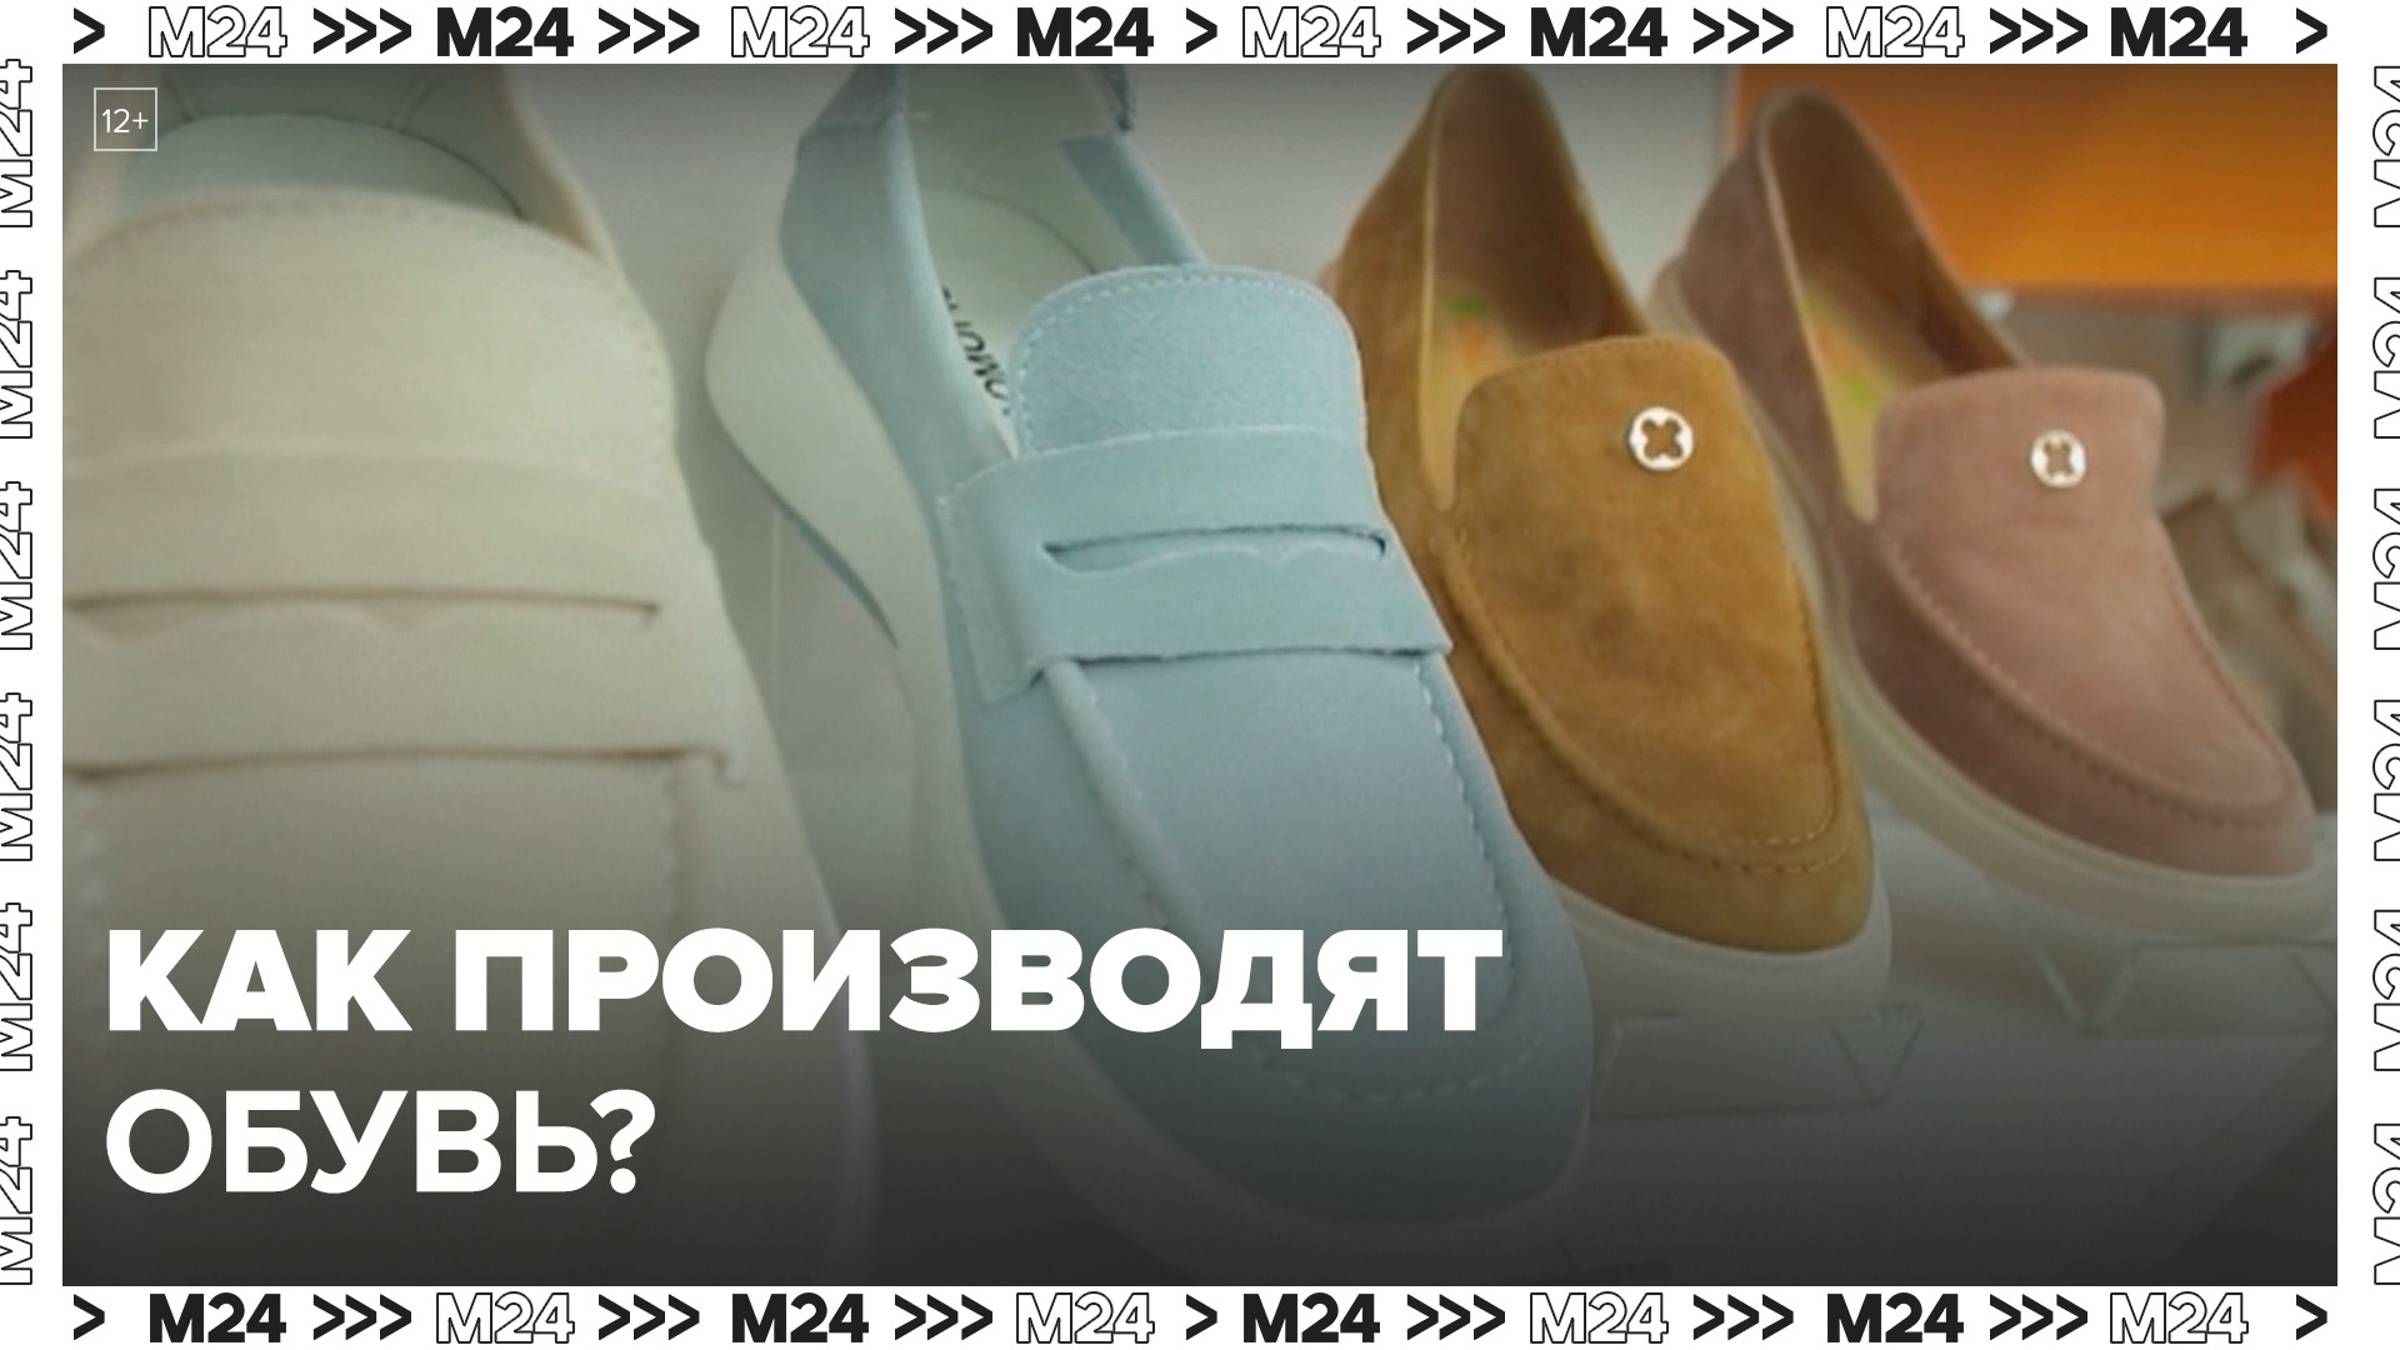 Как производят обувь? — Москва24|Контент